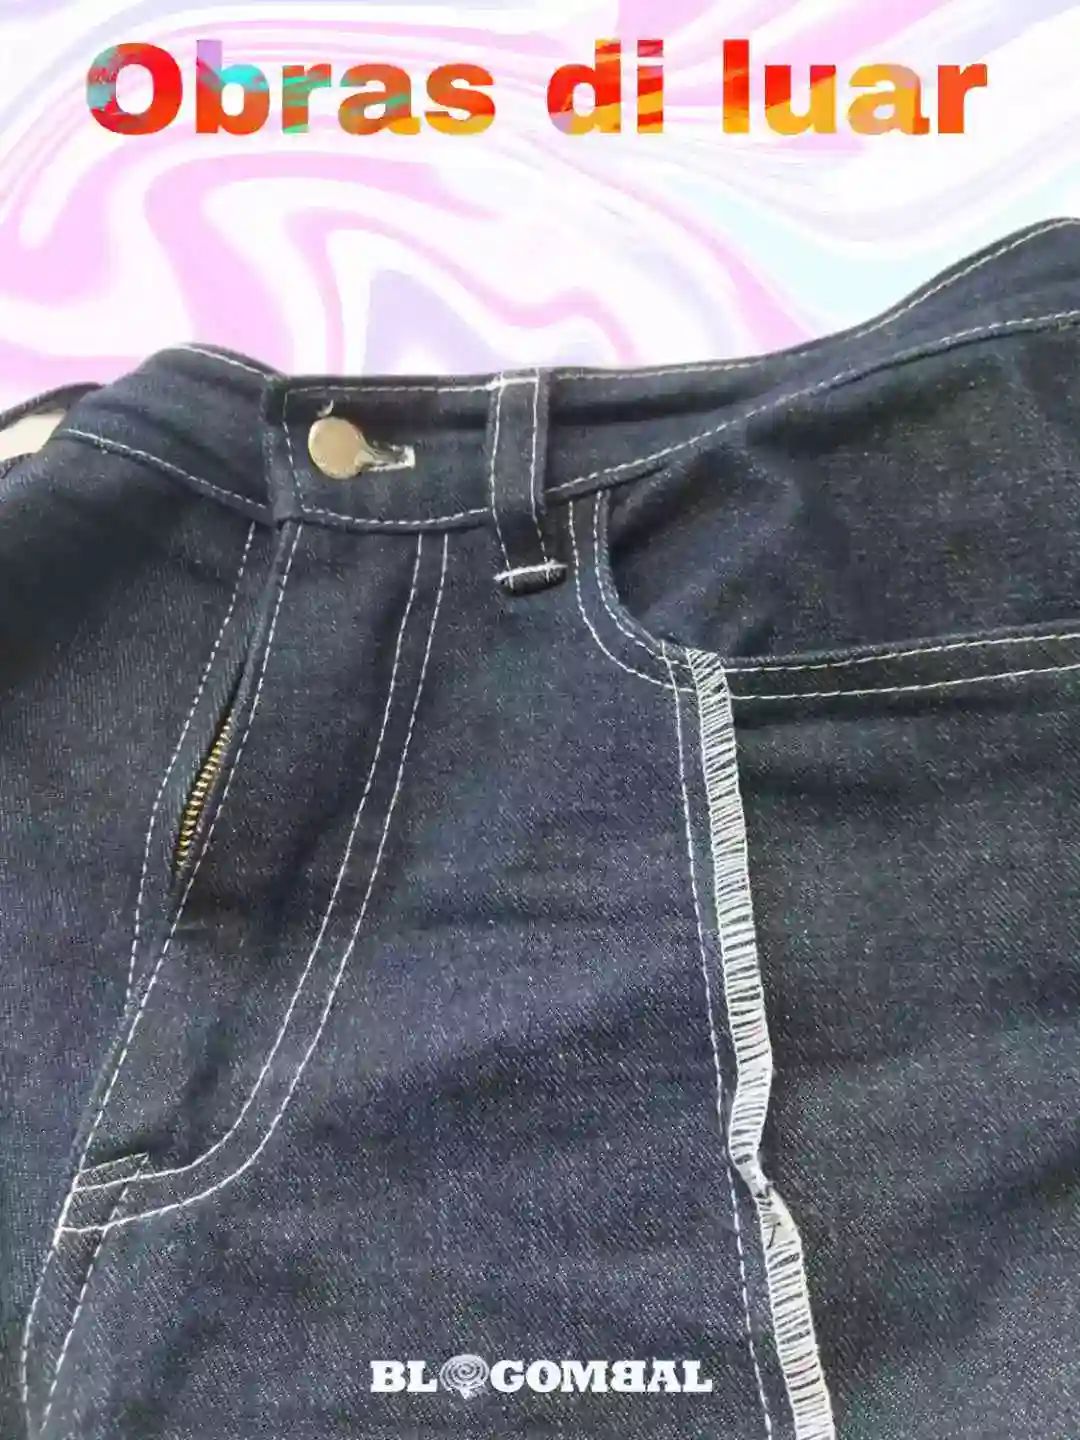 Celana jeans dengan jahitan obras di luar 